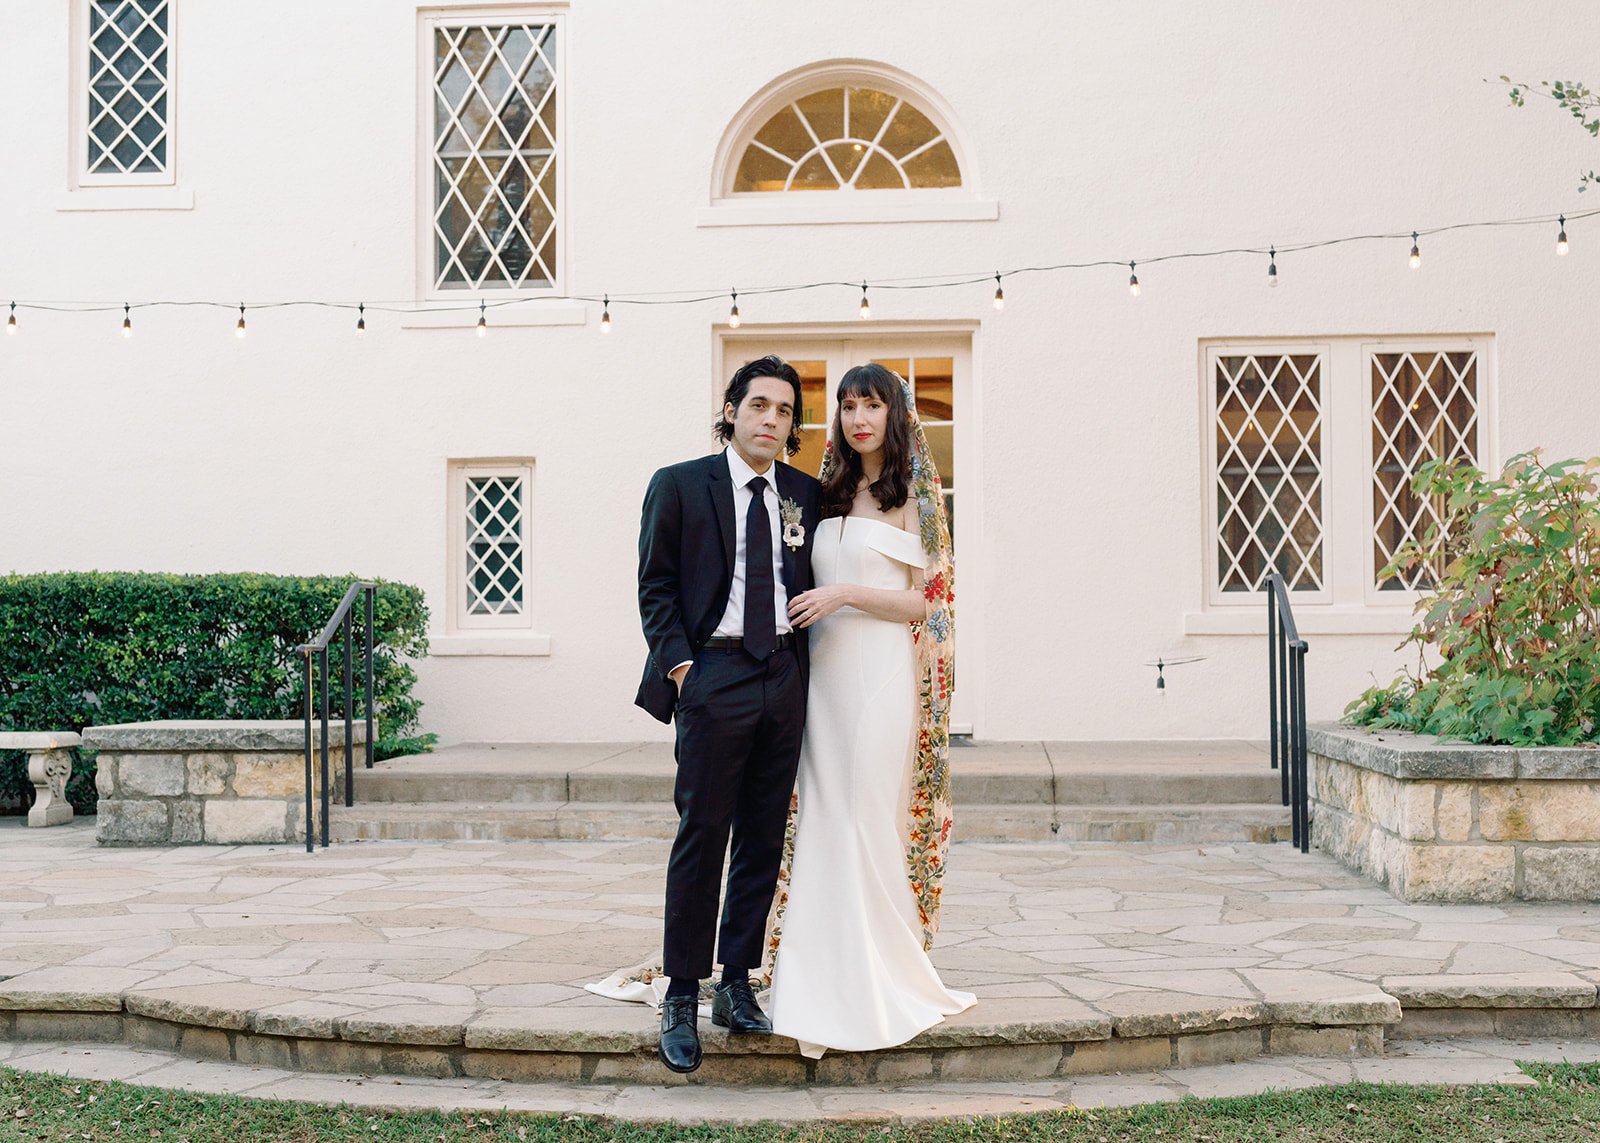 Best-Austin-Wedding-Photographers-Elopement-Film-35mm-Asheville-Santa-Barbara-Laguna-Gloria-47.jpg